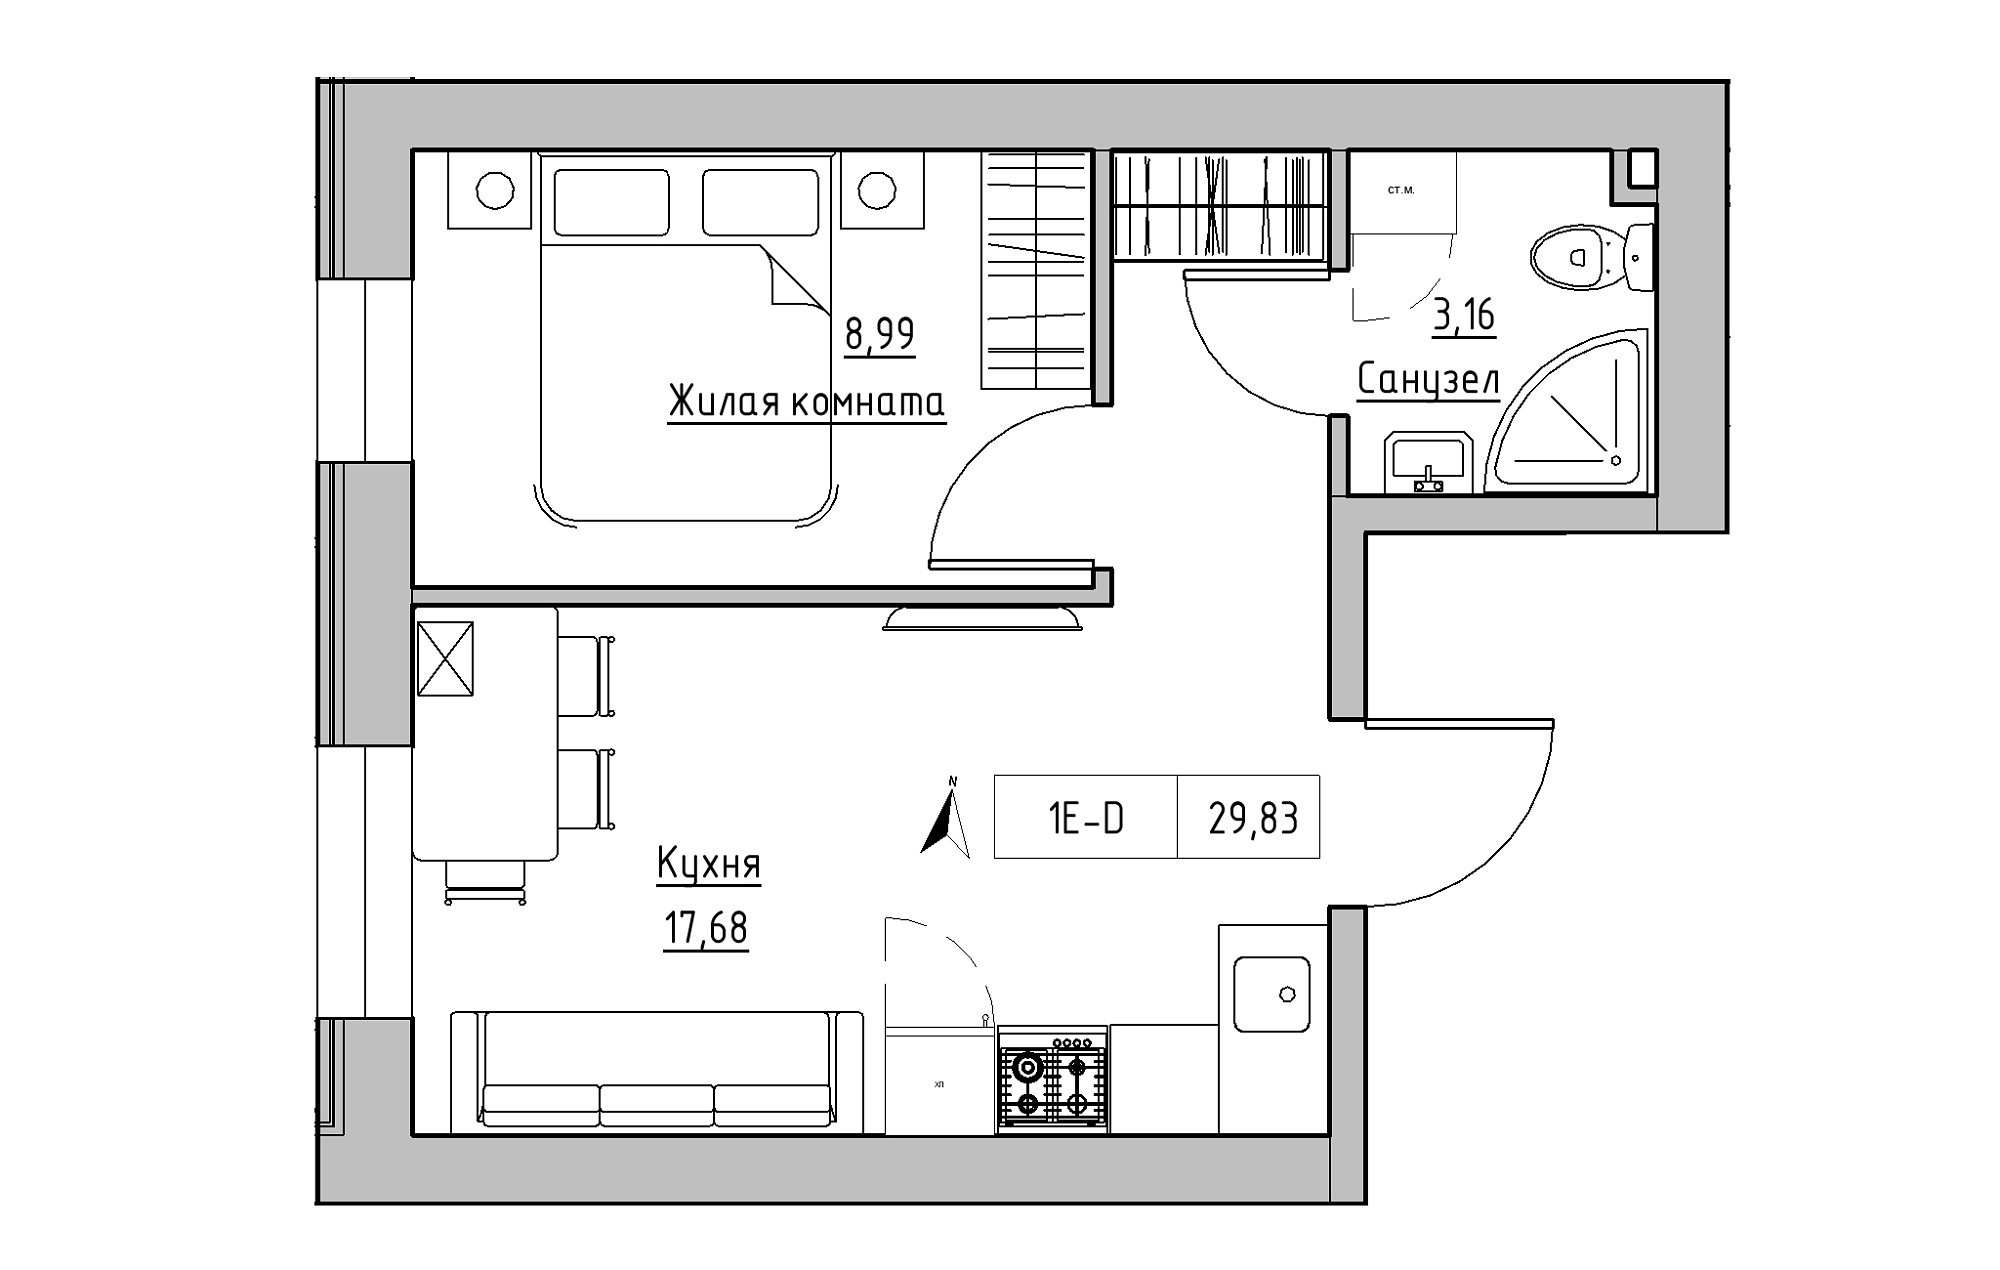 Планировка 1-к квартира площей 29.83м2, KS-019-01/0003.